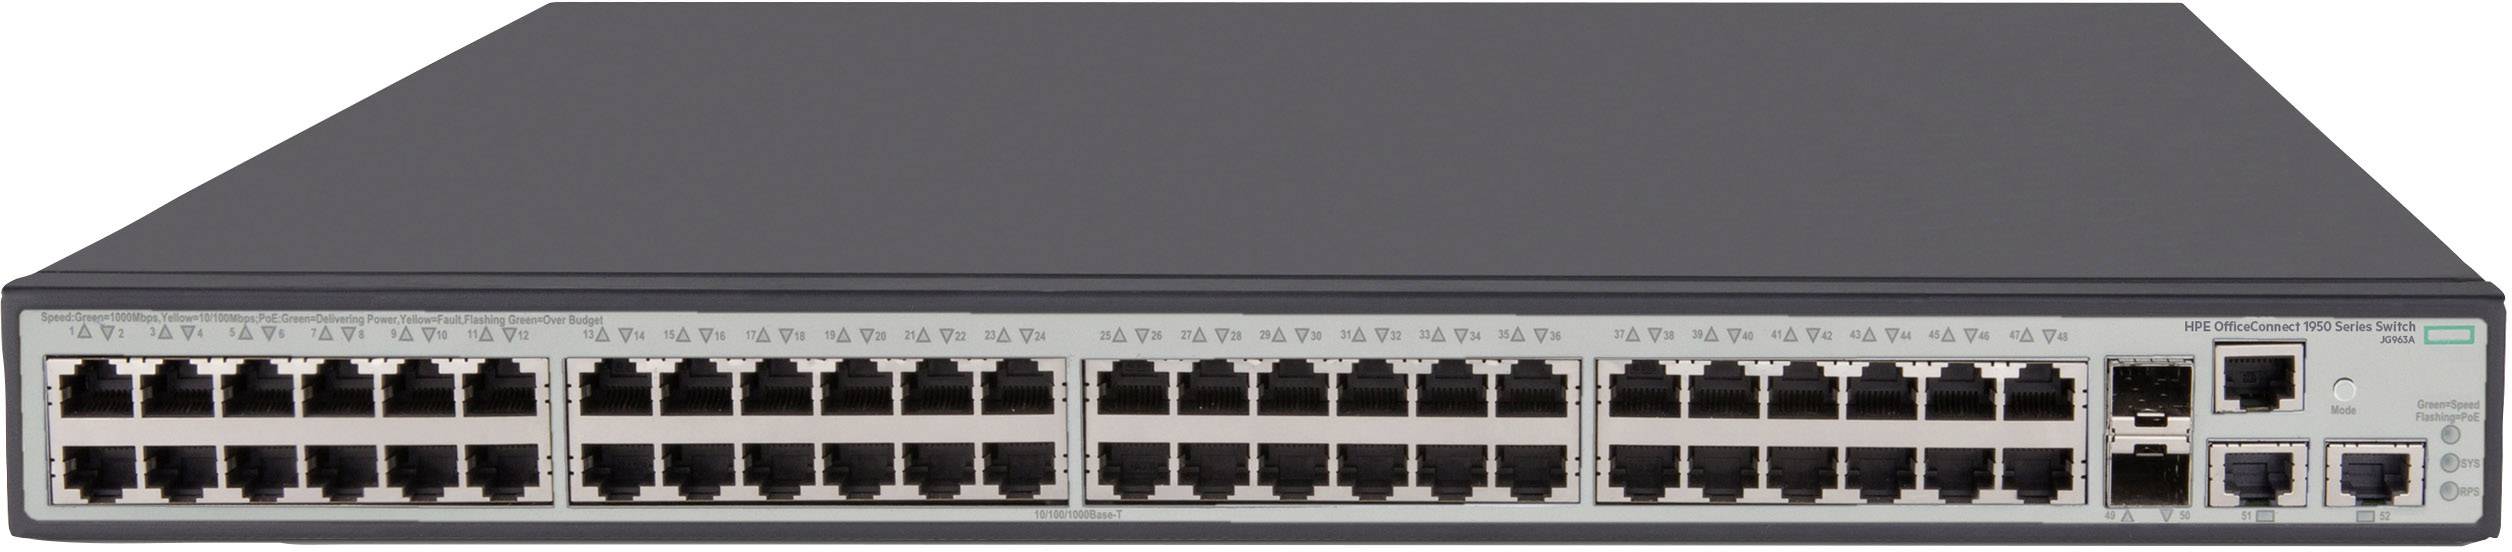 HP 1950-48G-2SFP+-2XGT-PoE+(370W) Switch (JG963A)